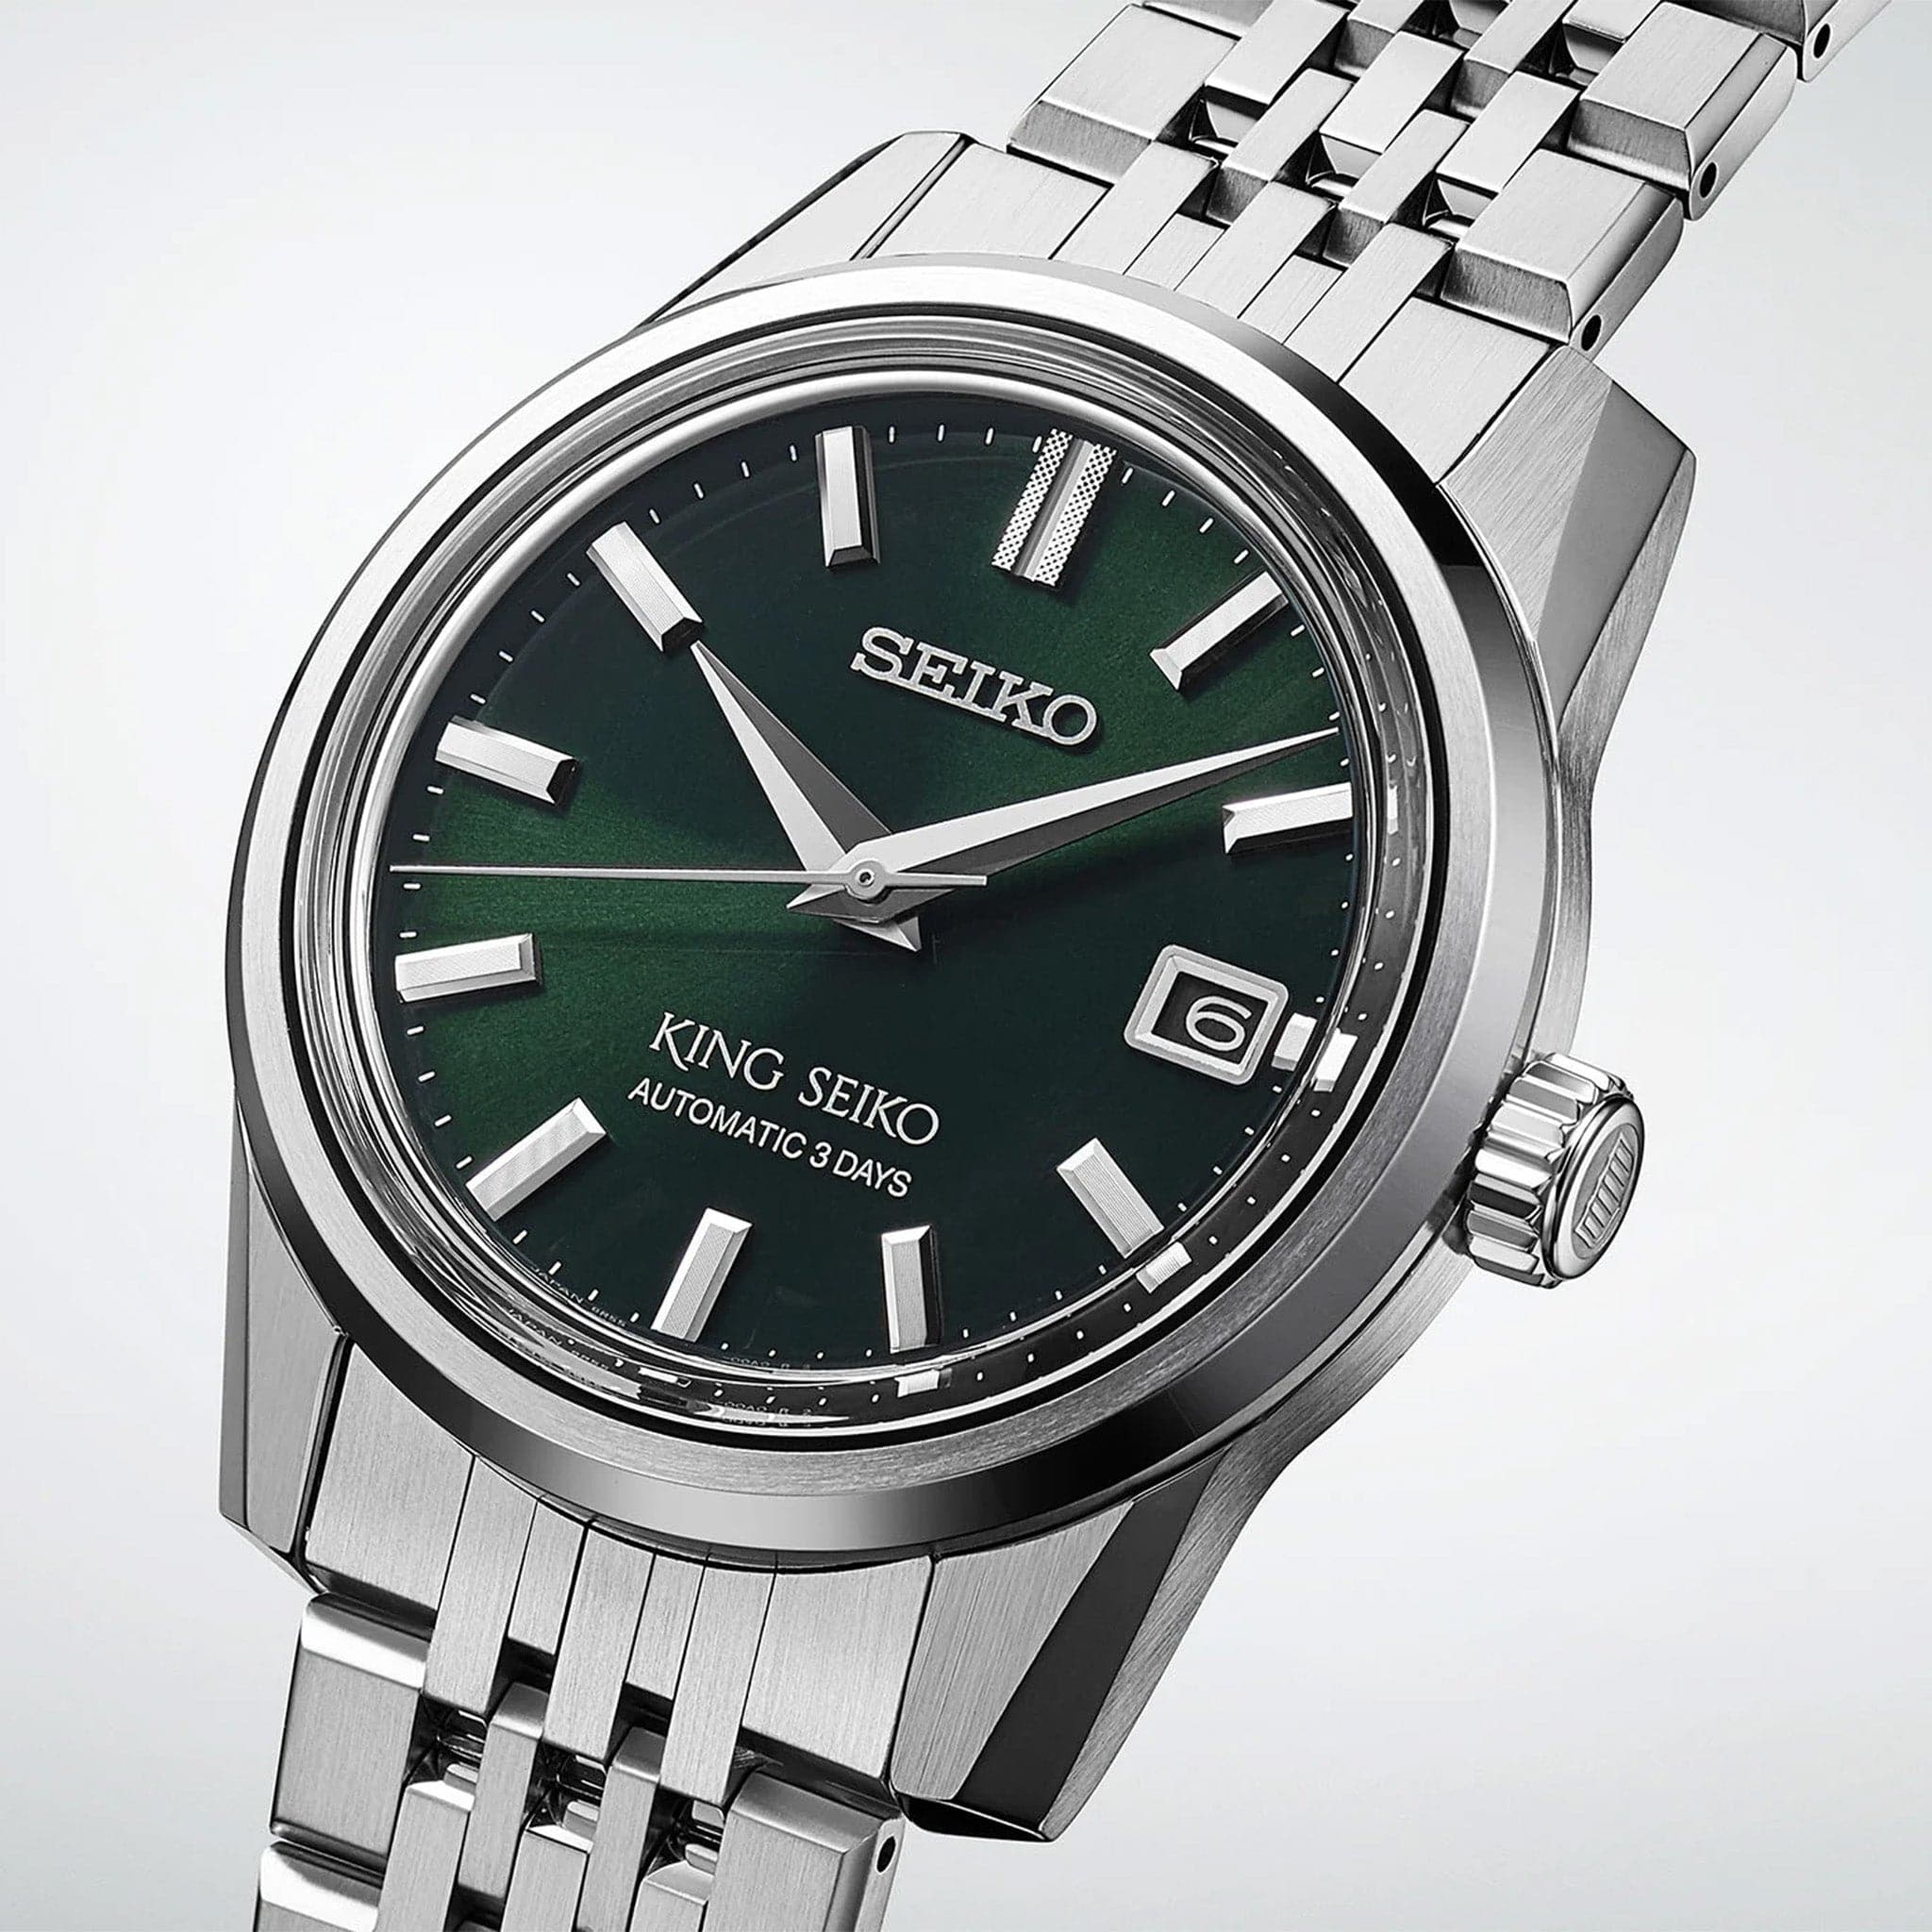 Seiko SPB373 King Seiko Green Dial Automatic Watch